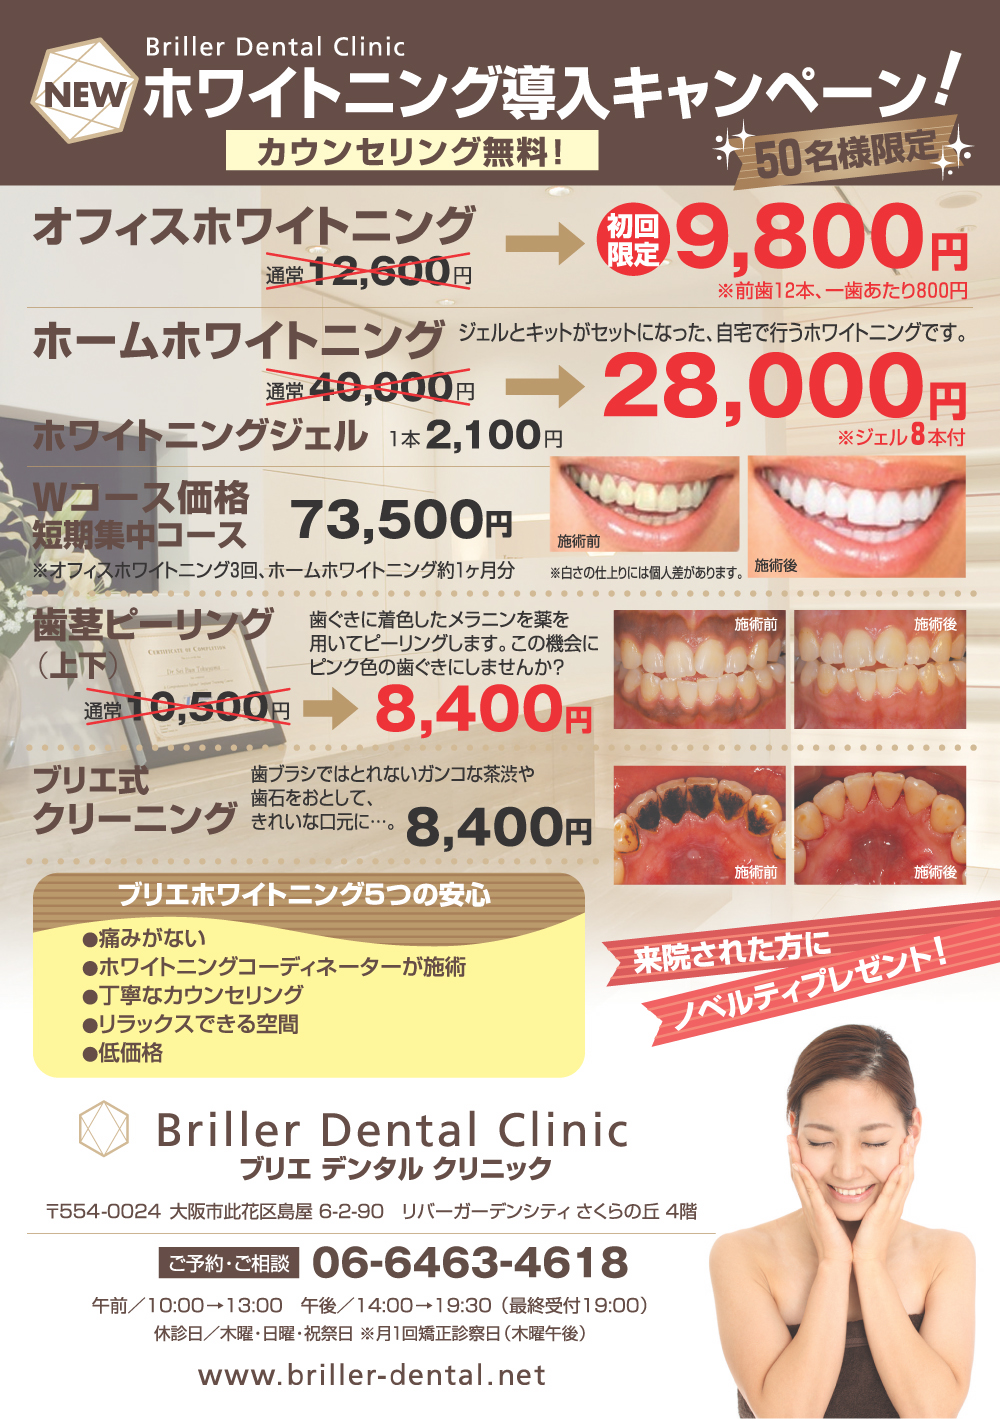 http://www.briller-dental.net/news/img/130920_briller_A5.jpg